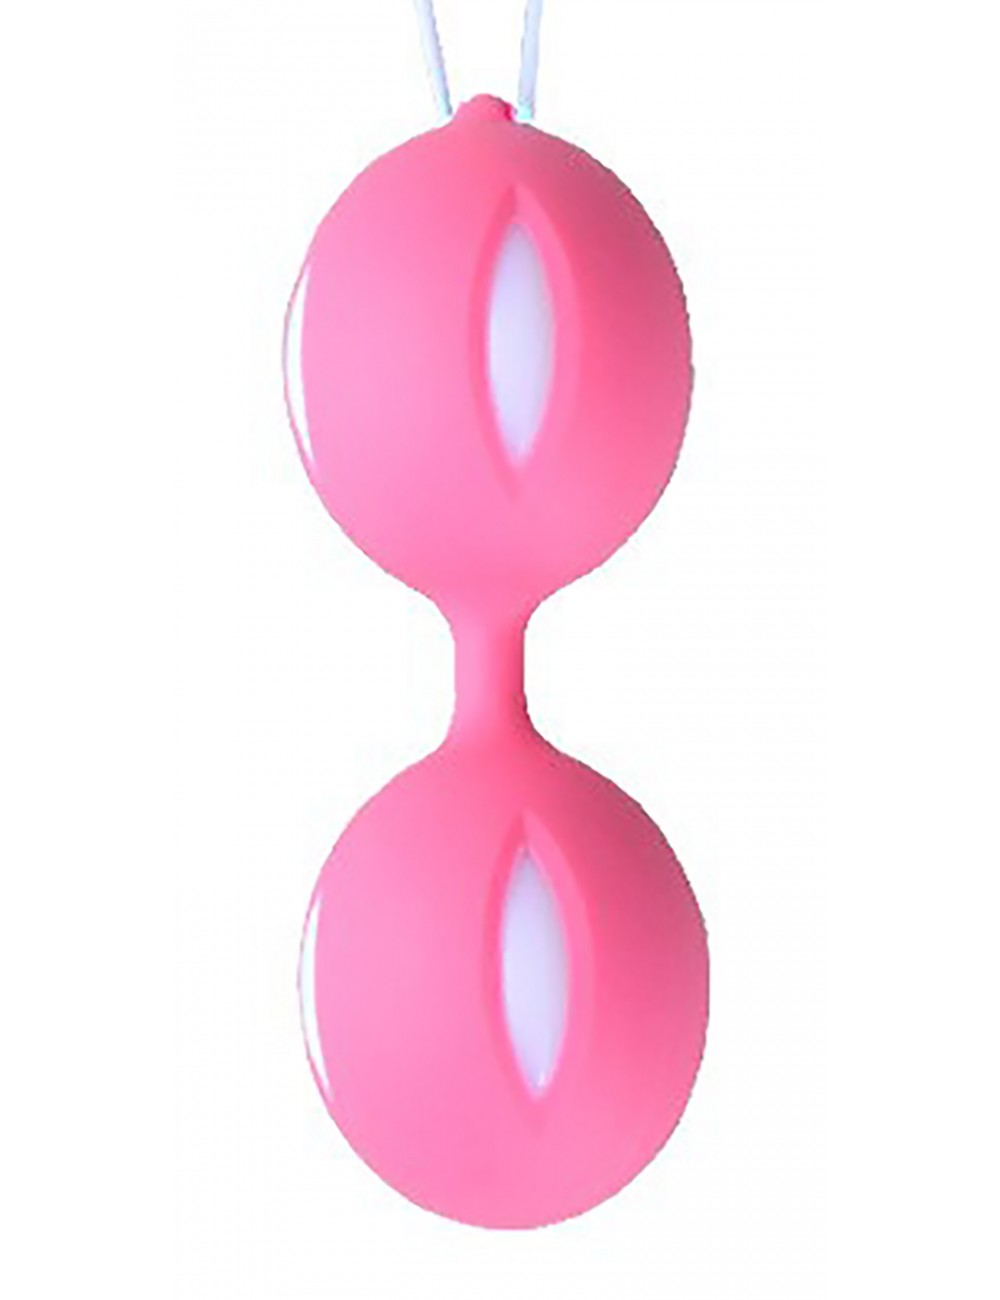 Sextoys - Boules de Geisha - Boules de Geisha rose avec stries blancs - CR-KOB001PNK - Dreamy Toys